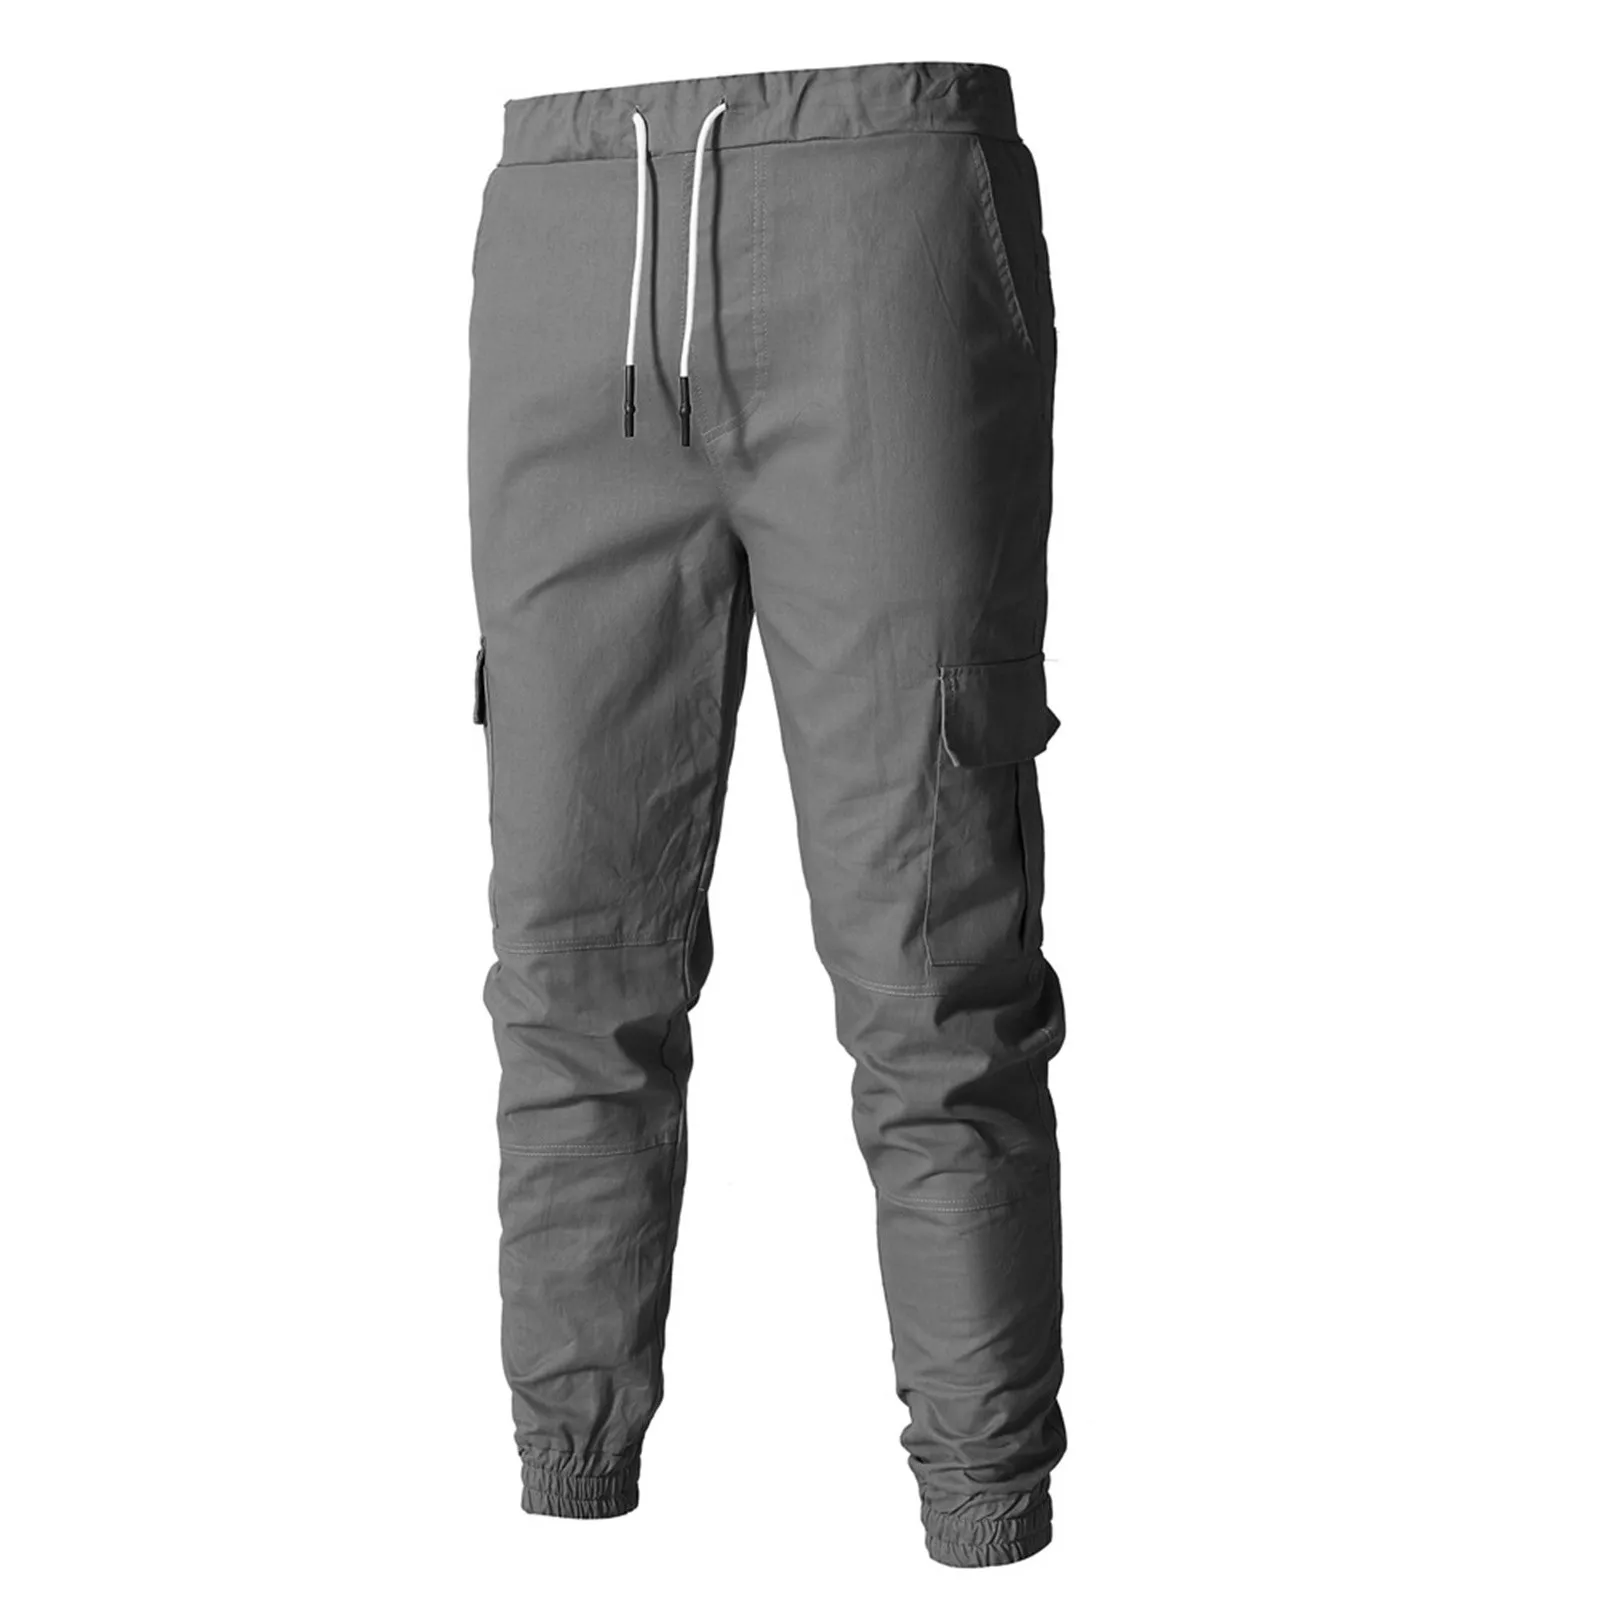 Spodnie męskie na co dzień moda duża kieszeń hiphopowe spodnie haremowe jakość znosić spodnie dresowe miękkie męskie biegaczy męskie spodnie pantalones